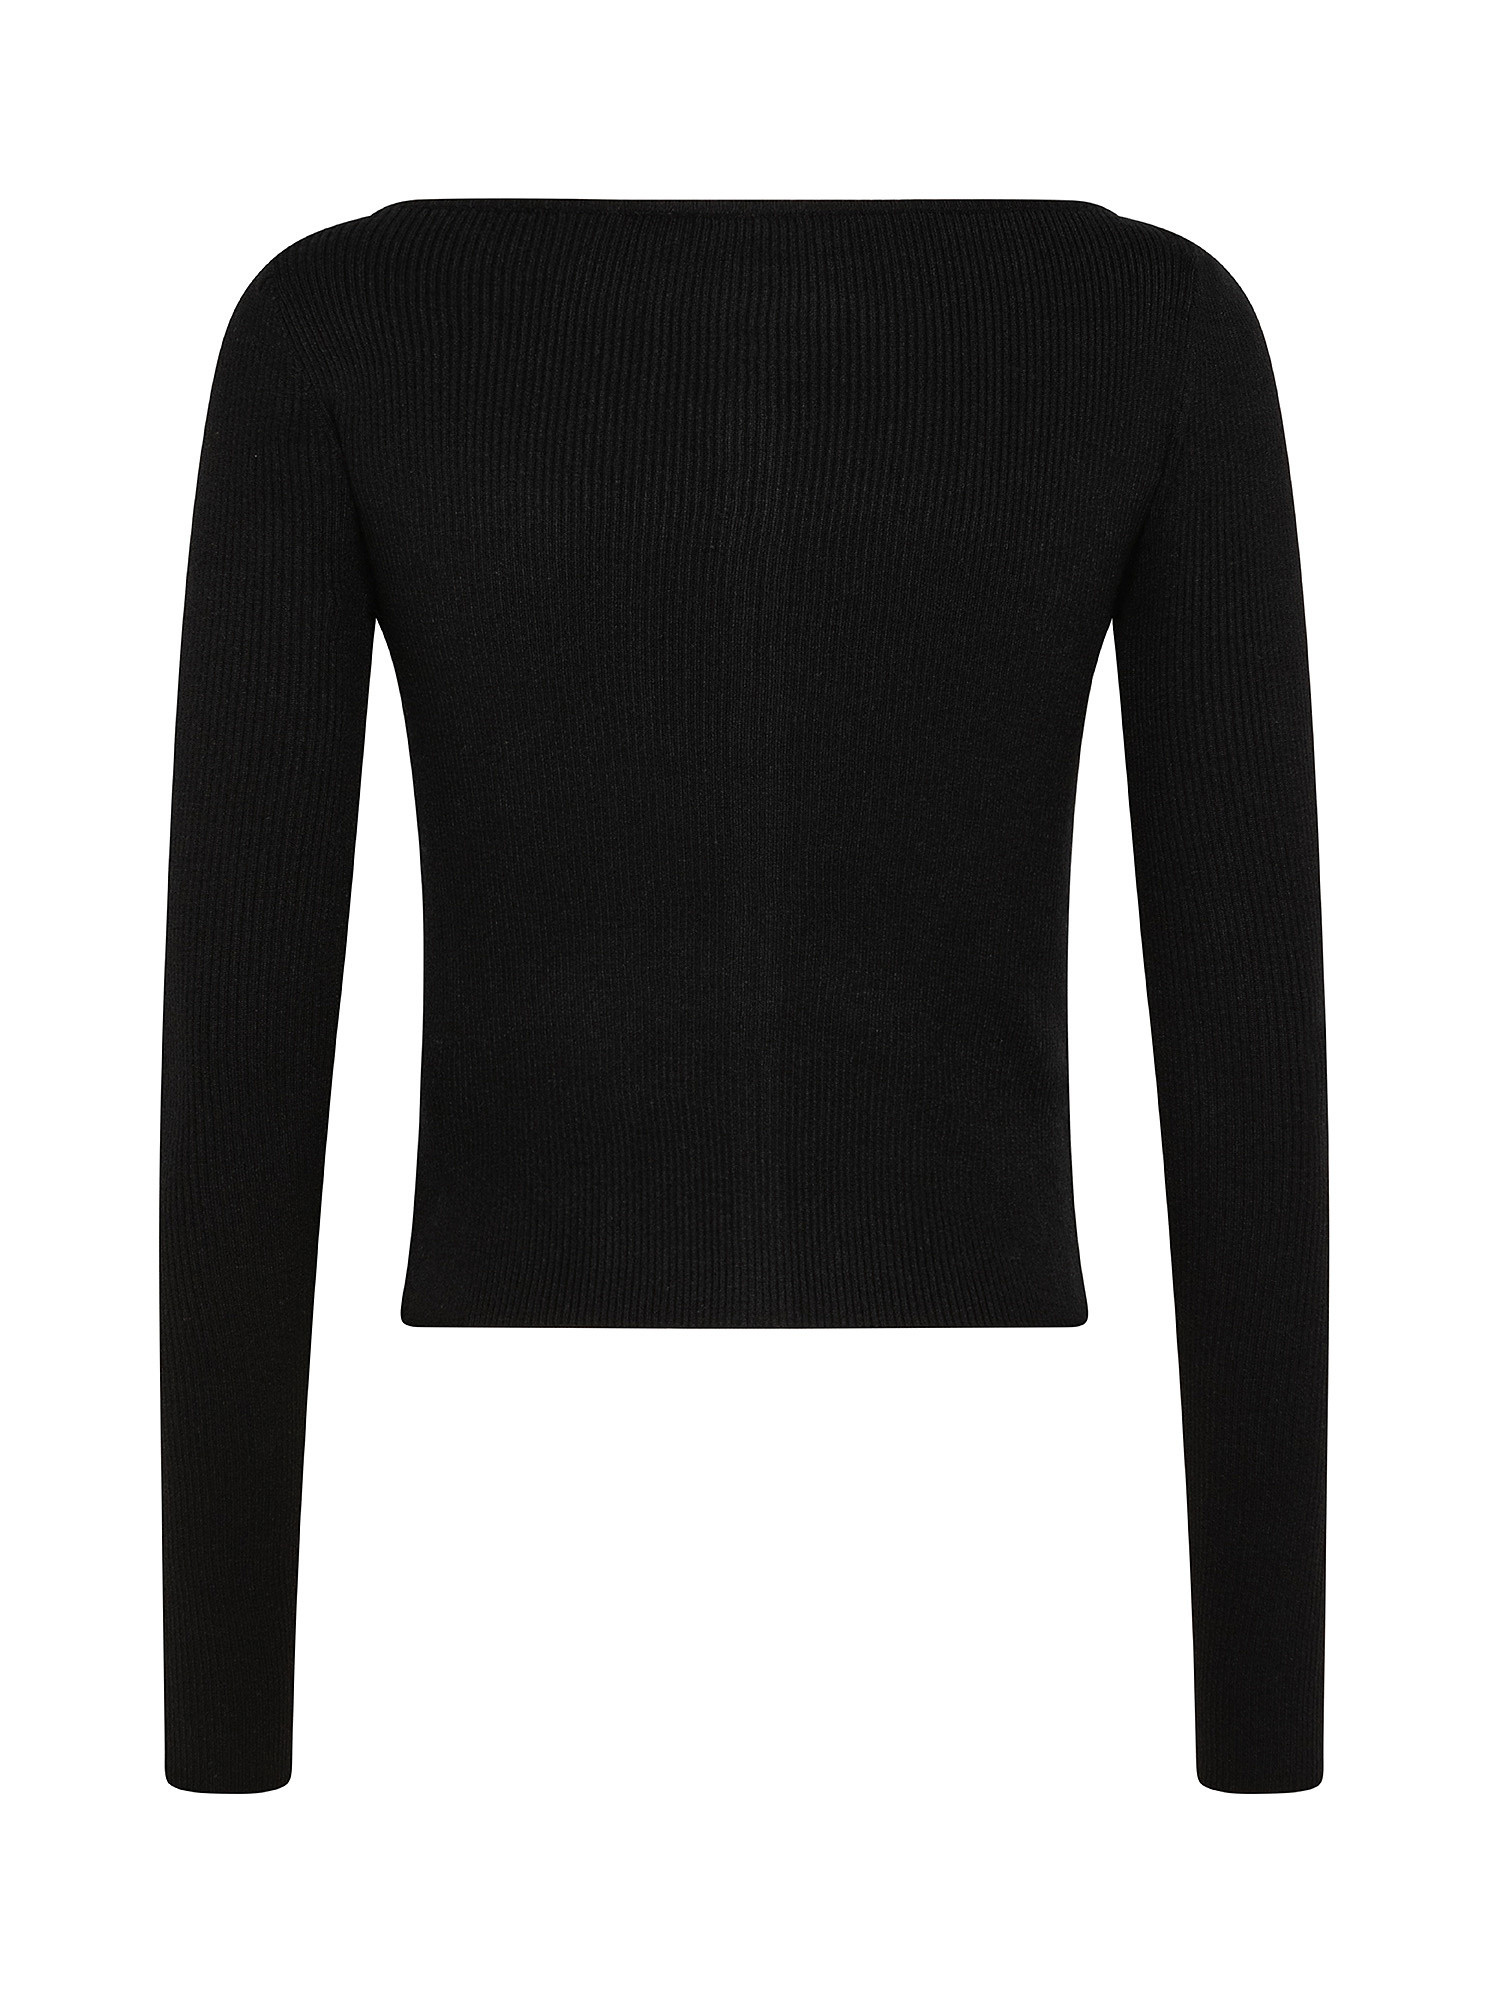 V neck long sleeves sweater, Black, large image number 1